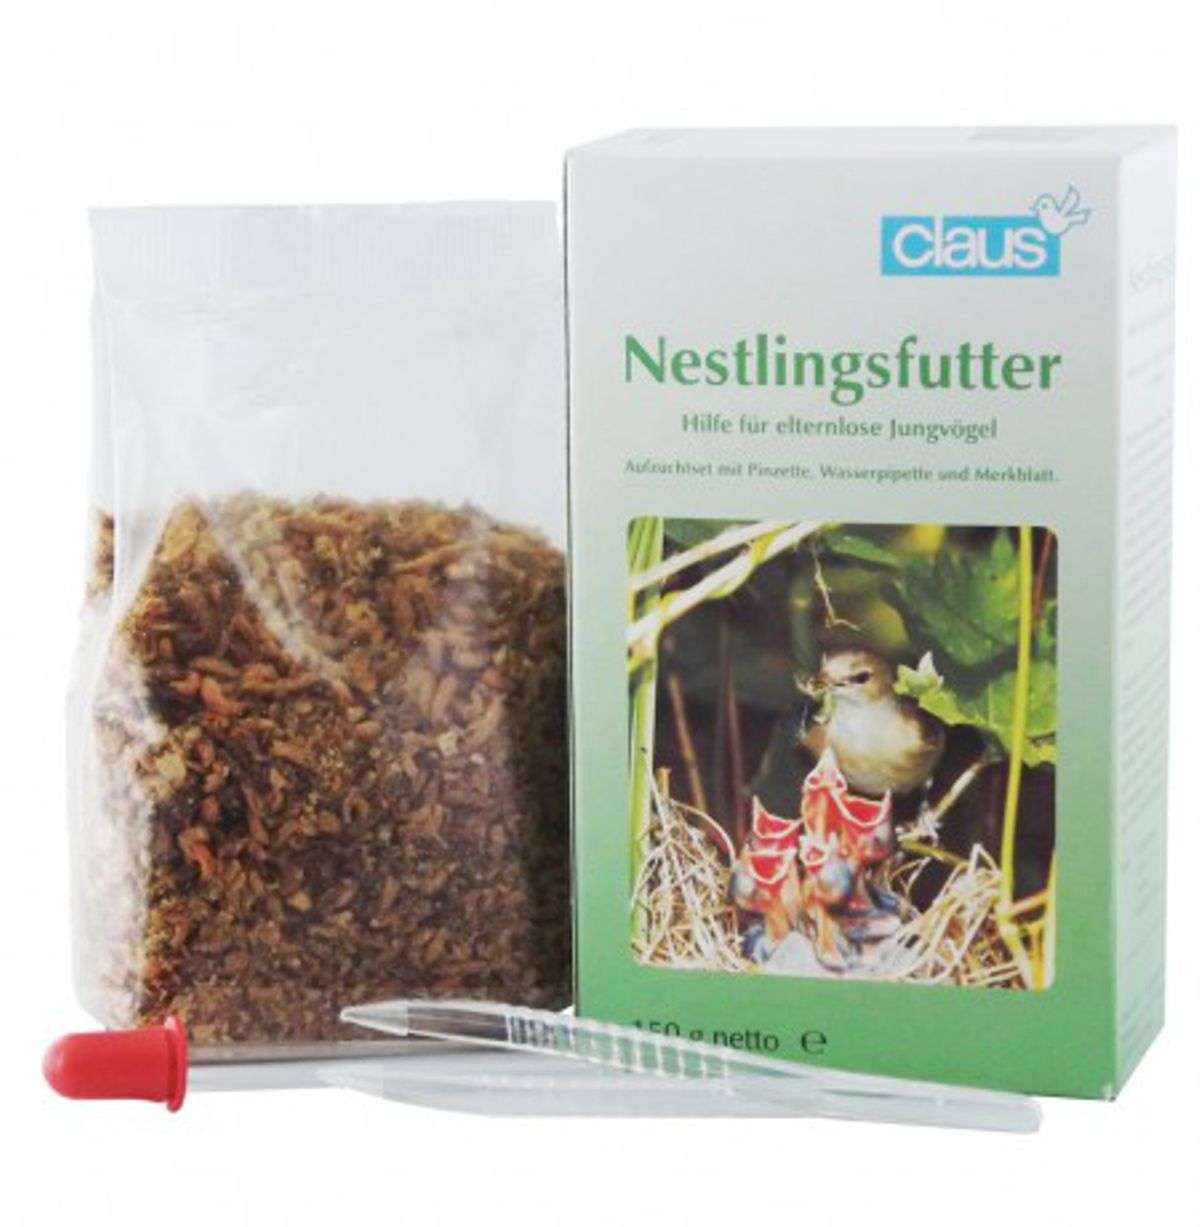 Nestlingsfutter-Set Claus 100 g